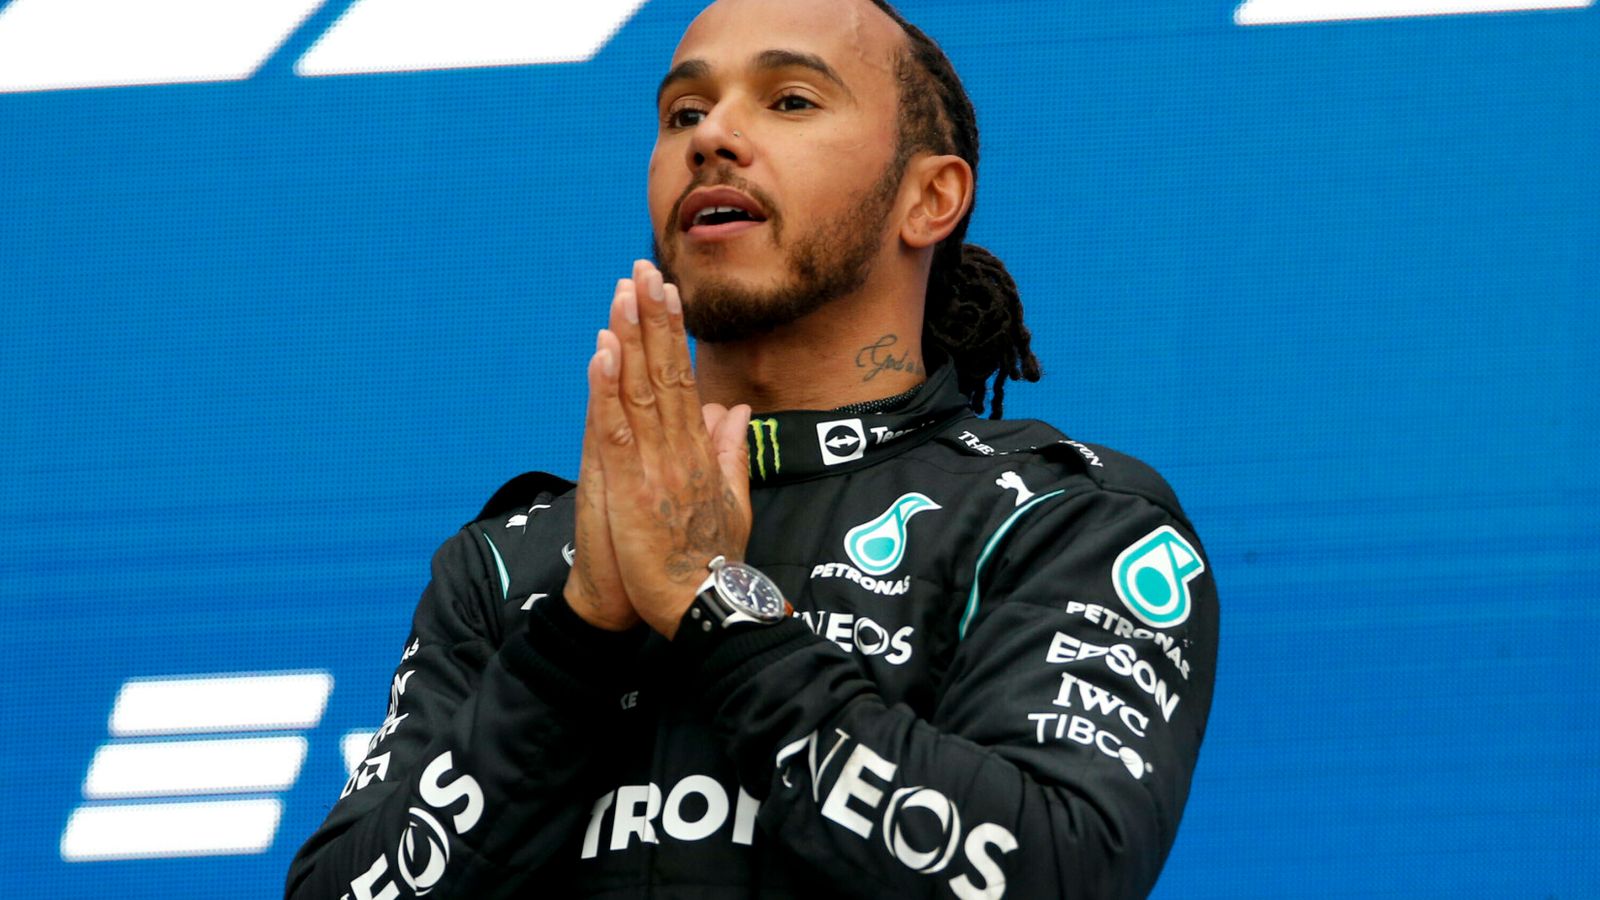 Russian GP Lewis Hamilton praises Mercedes, Lando Norris, after